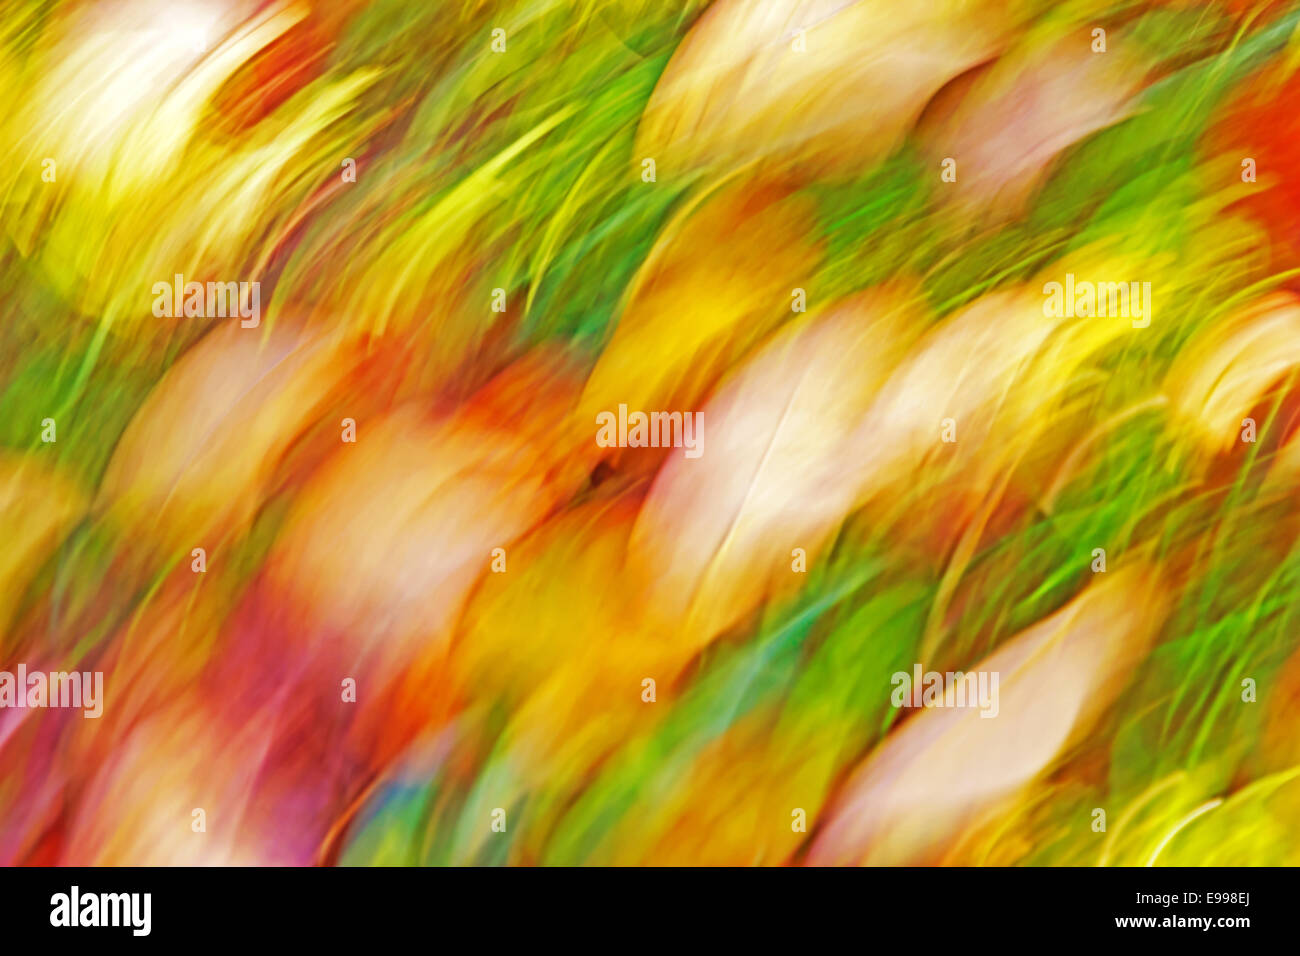 Bewegung verwischt abstrakten Hintergrund, Pastell Farben des Herbstes. Stockfoto